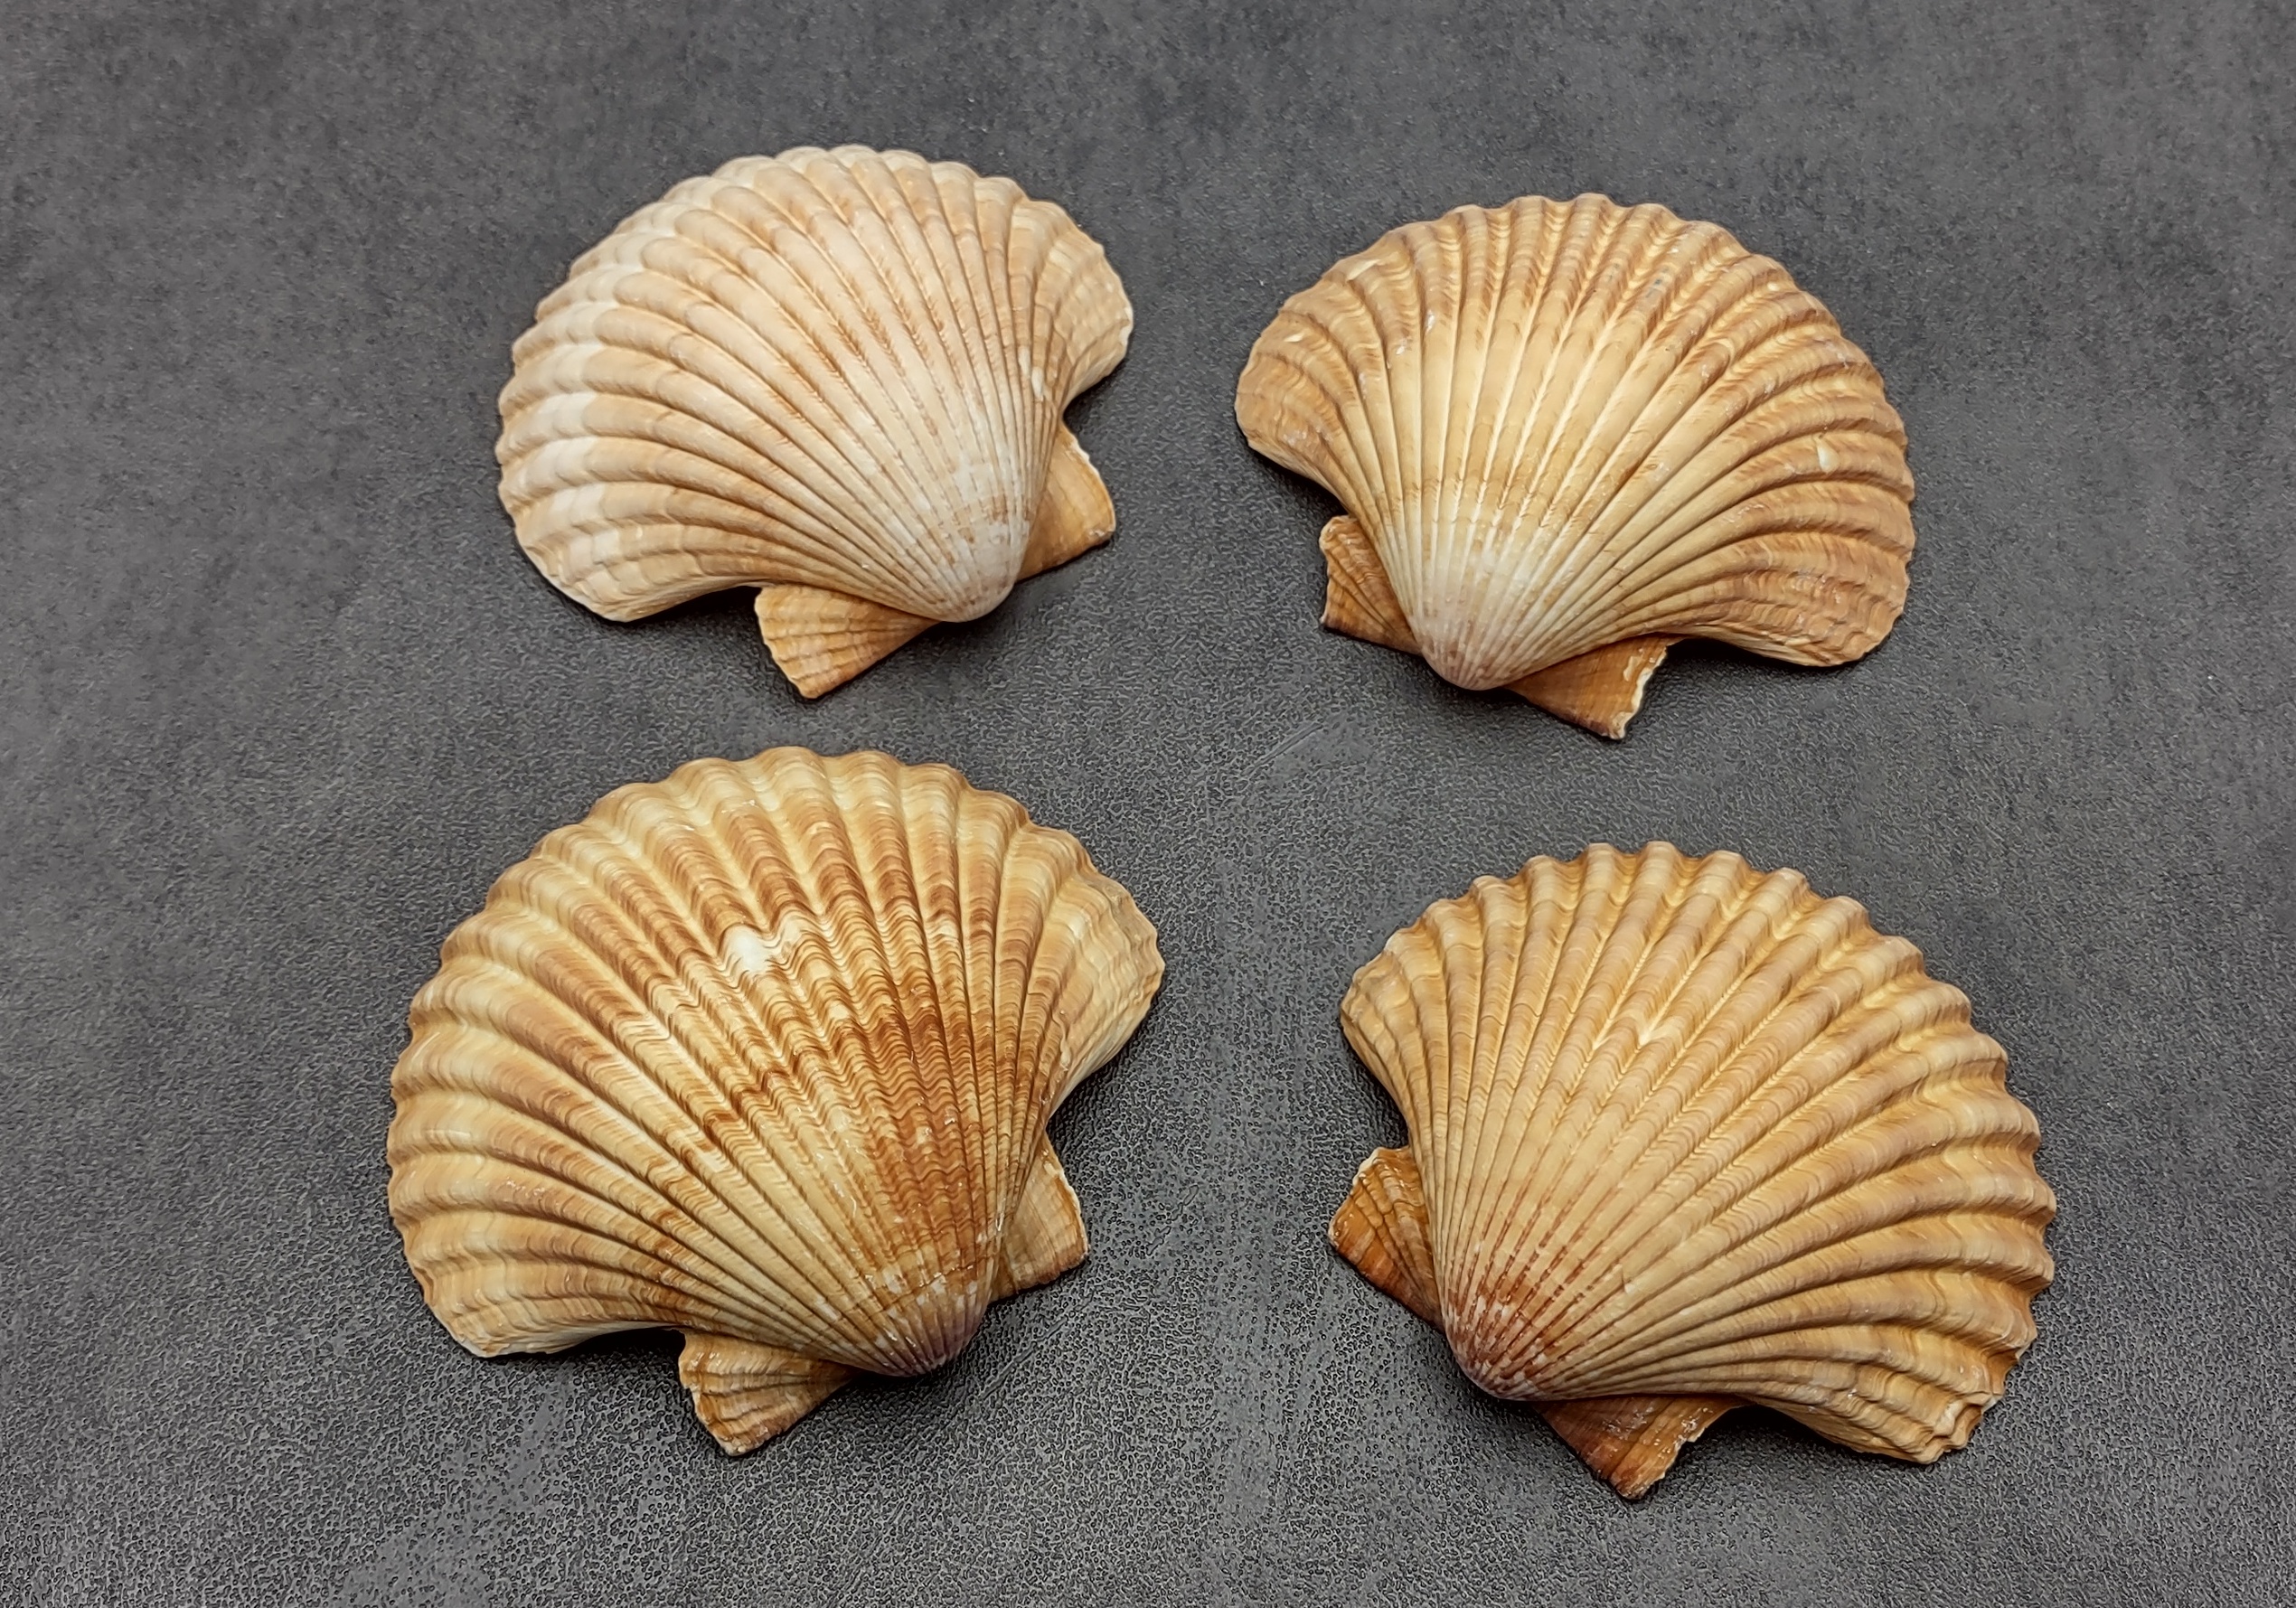 Noble Scallop Seashells - Pecten Nobilis - (10 shells approx. 1.5